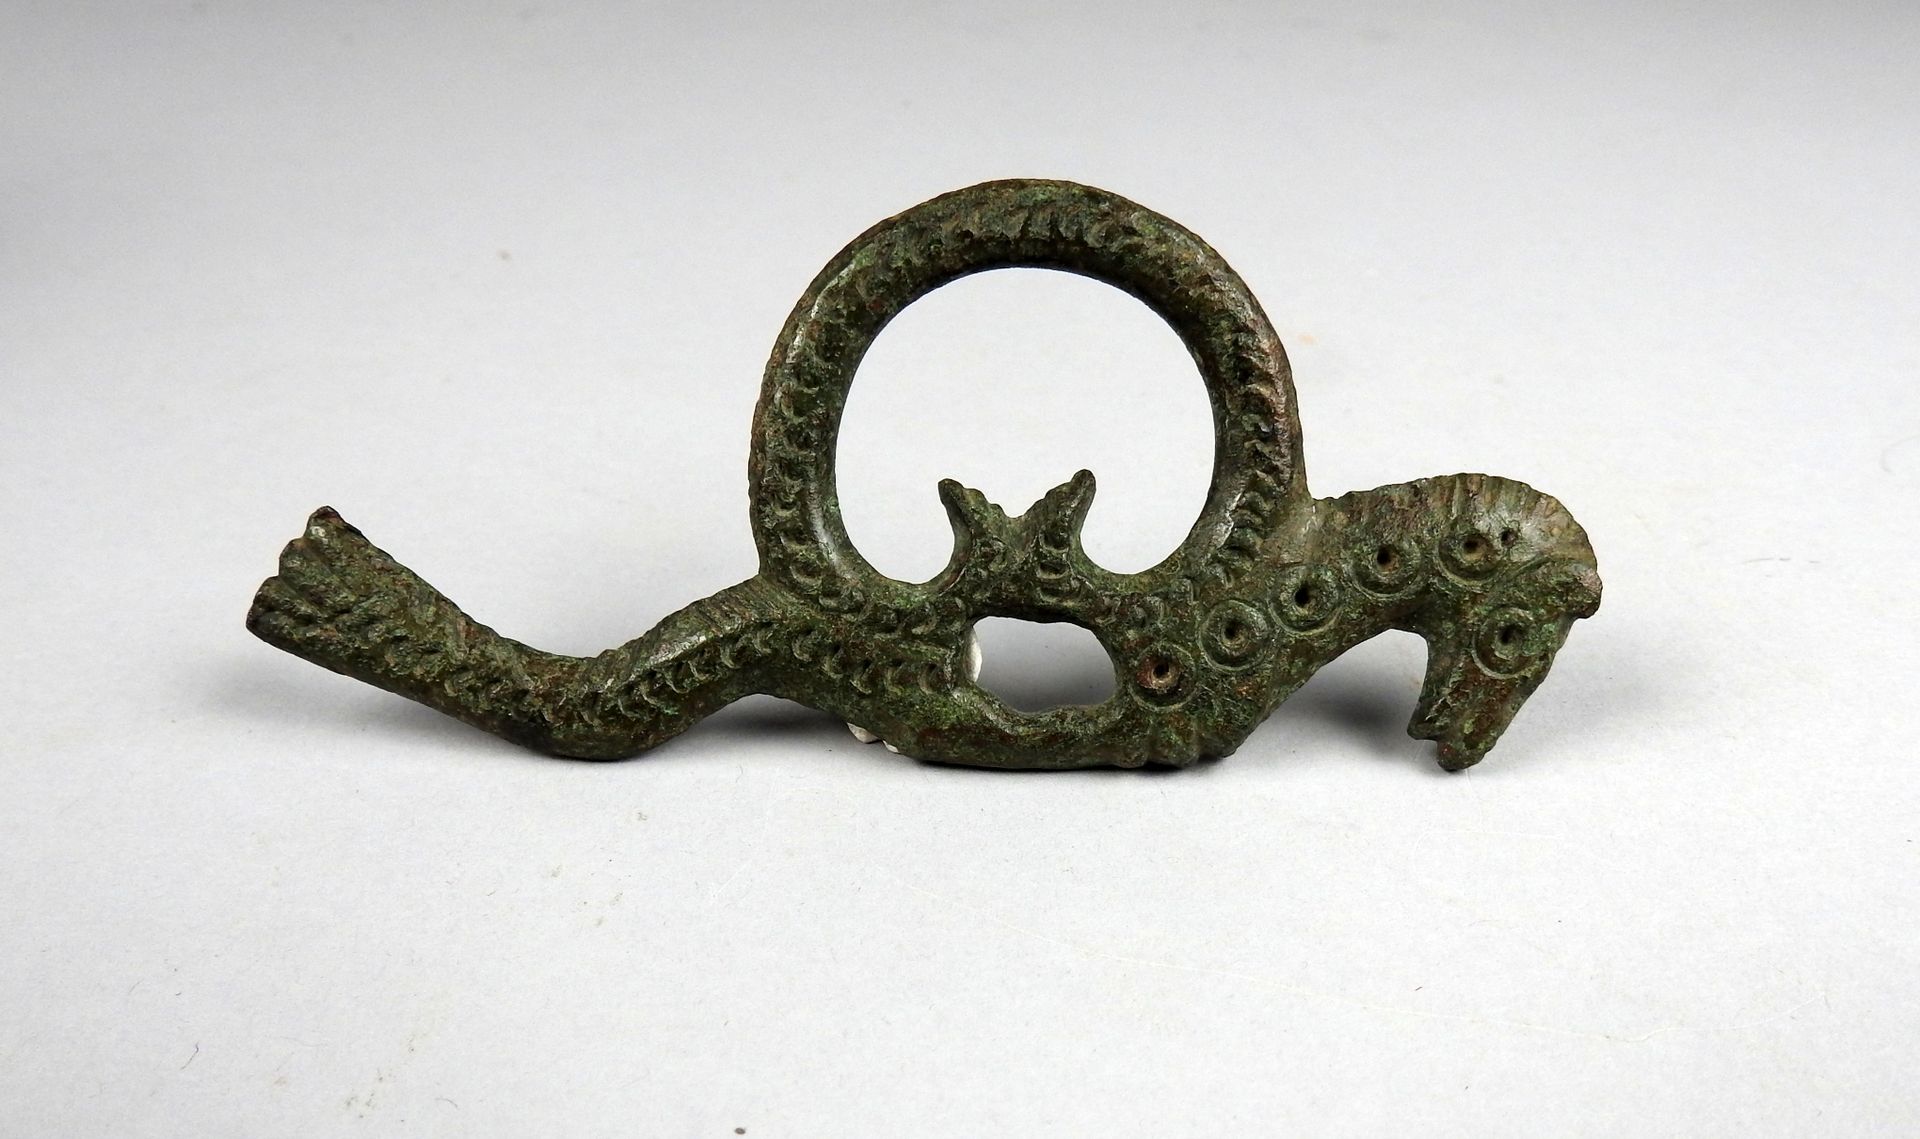 Null 代表一匹马的好奇的扣子或戒指，有ocelli的装饰

前19世纪某省著名人士的收藏

青铜12厘米

地中海盆地 公元前一千年或罗马时期